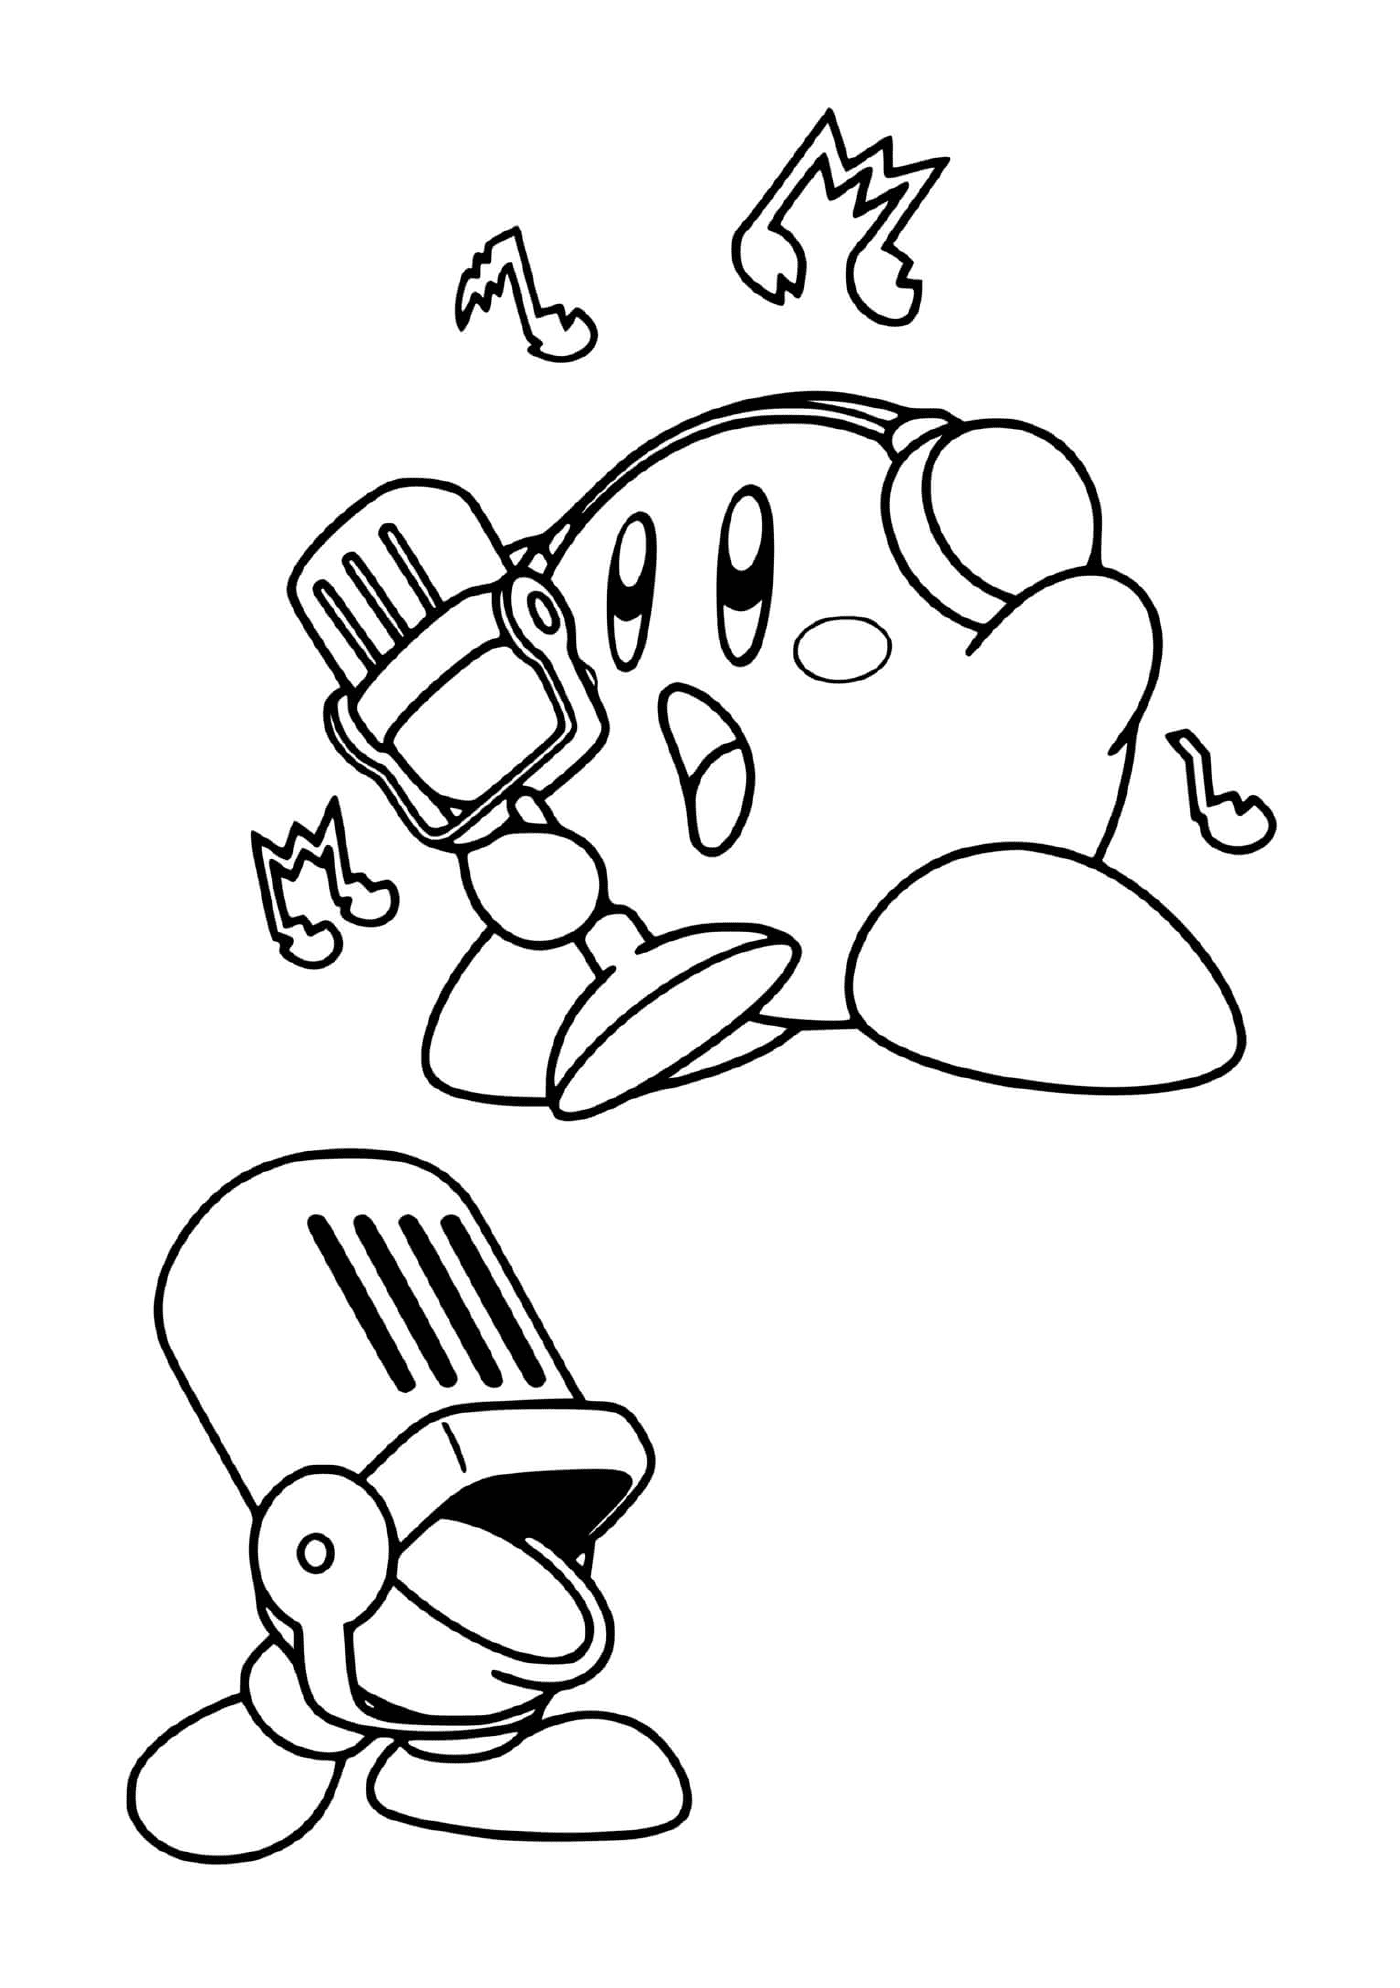  Kirby talentoso com microfone 